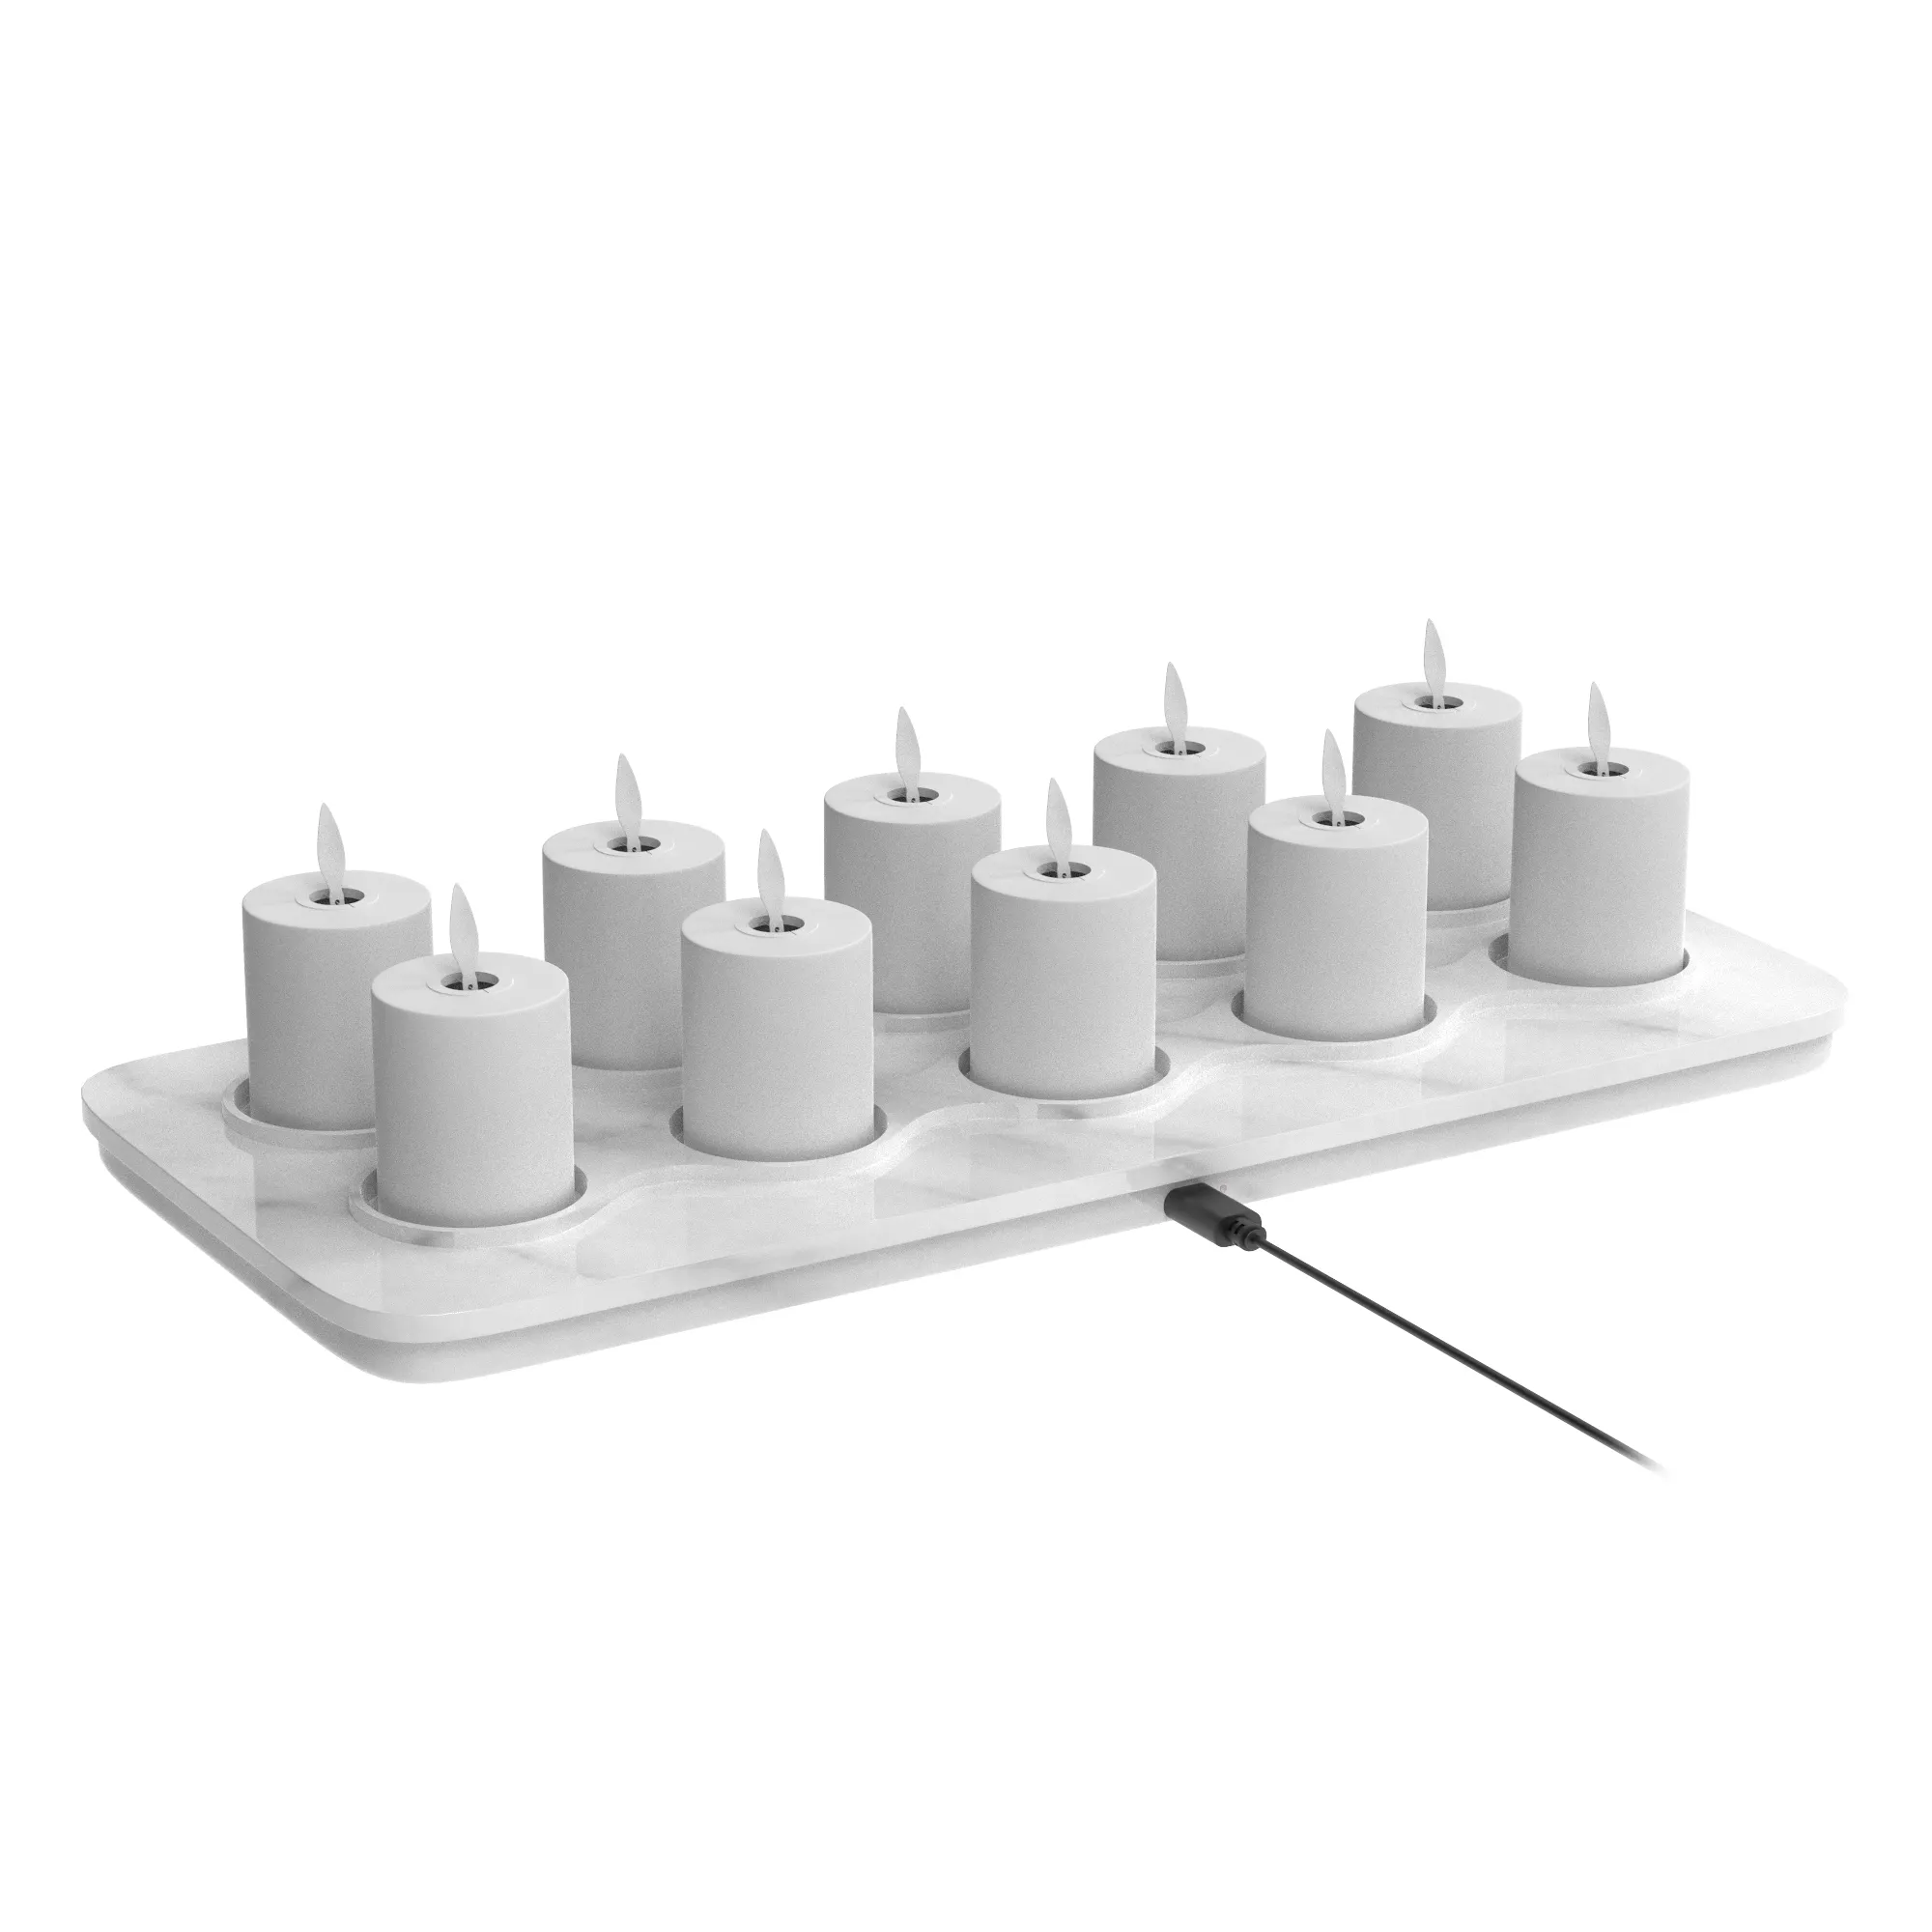 10 قطع شمع ليد الذكية لهب الشاي المضيء شمع قابل للشحن مصباح شمع الوميض لديكور المنزل